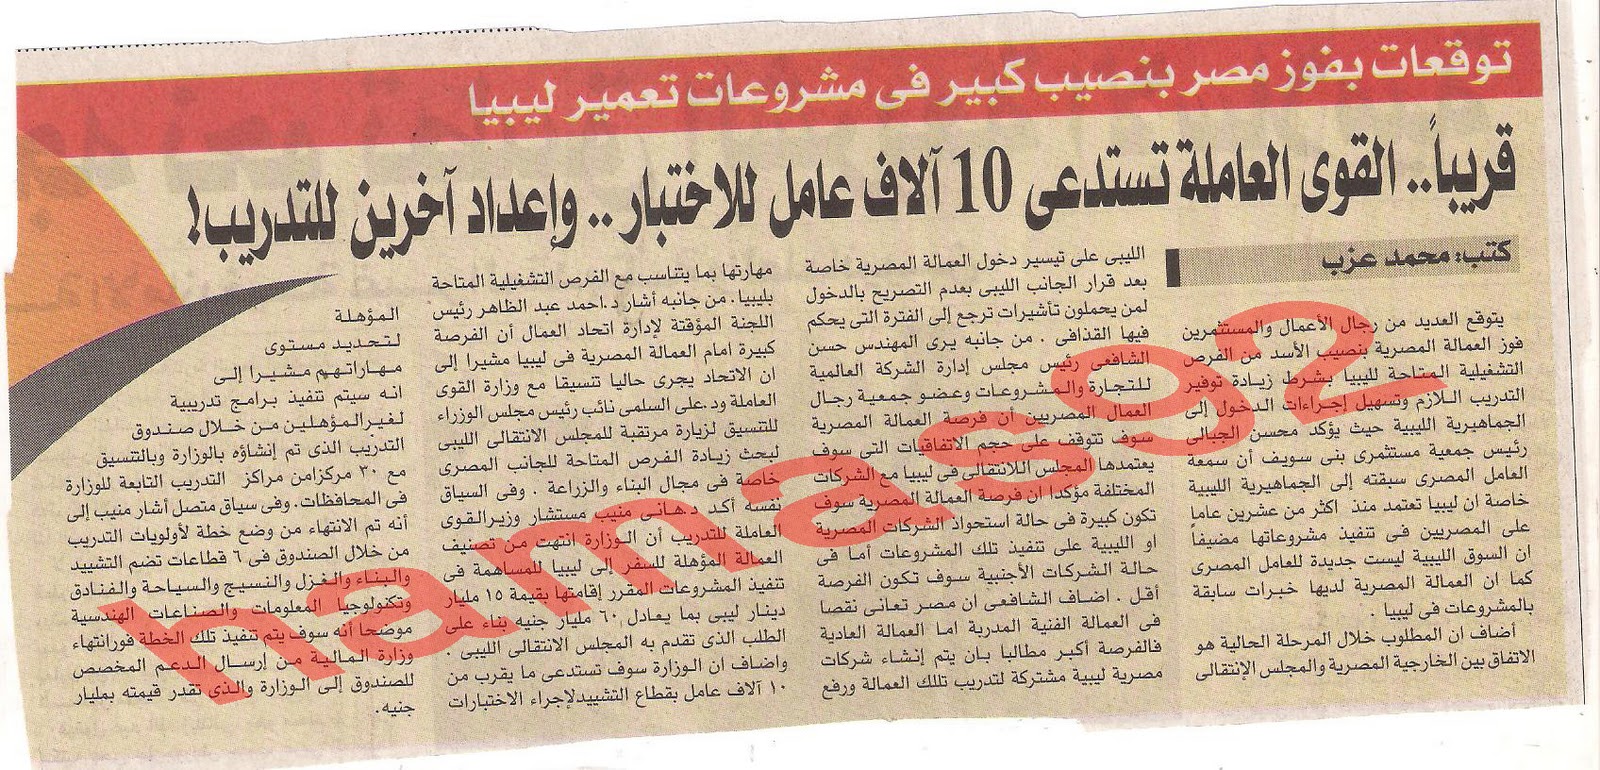 القوى العاملة تستدعى 10 الاف عامل للاختبار واخرين للتدريب وظائف فى ليبيا الجمعة 25\11\2011 Picture+019